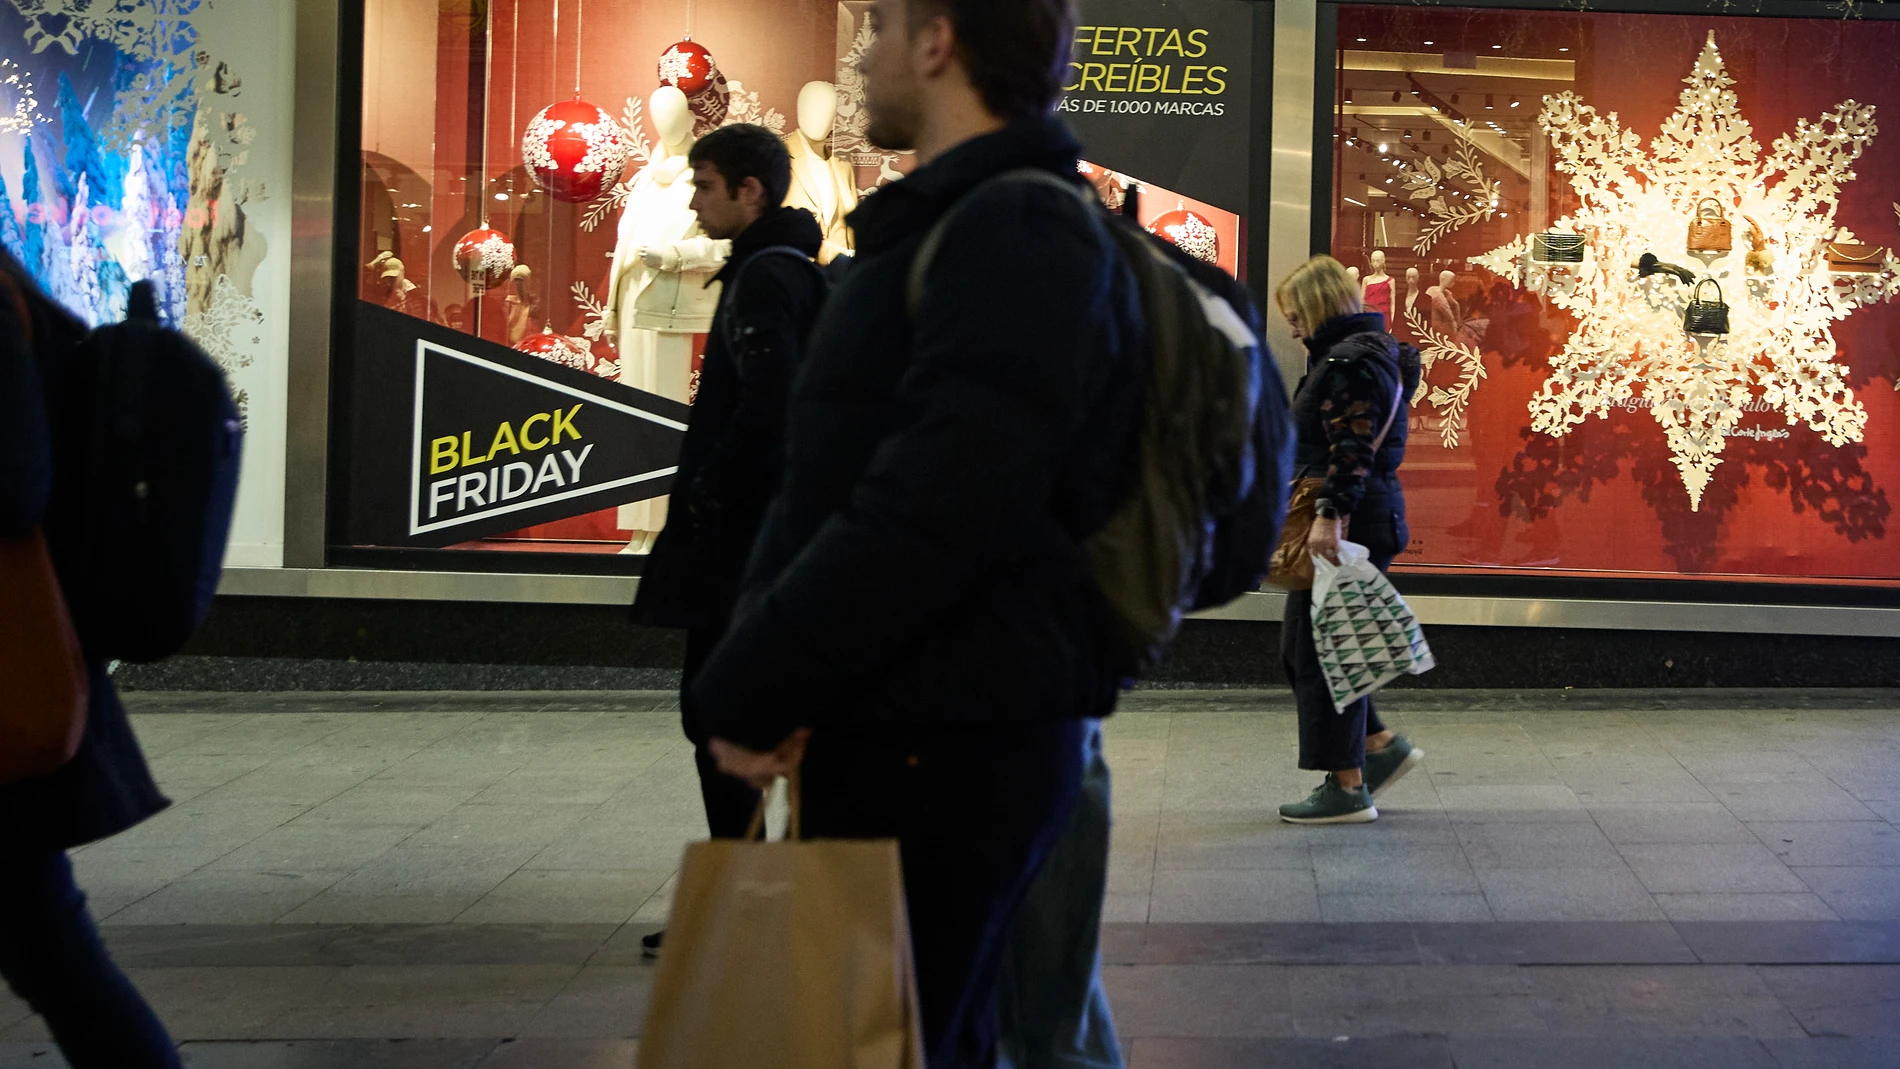 Economía.- Los españoles gastarán 727 euros en la campaña de Navidad y rebajas de invierno